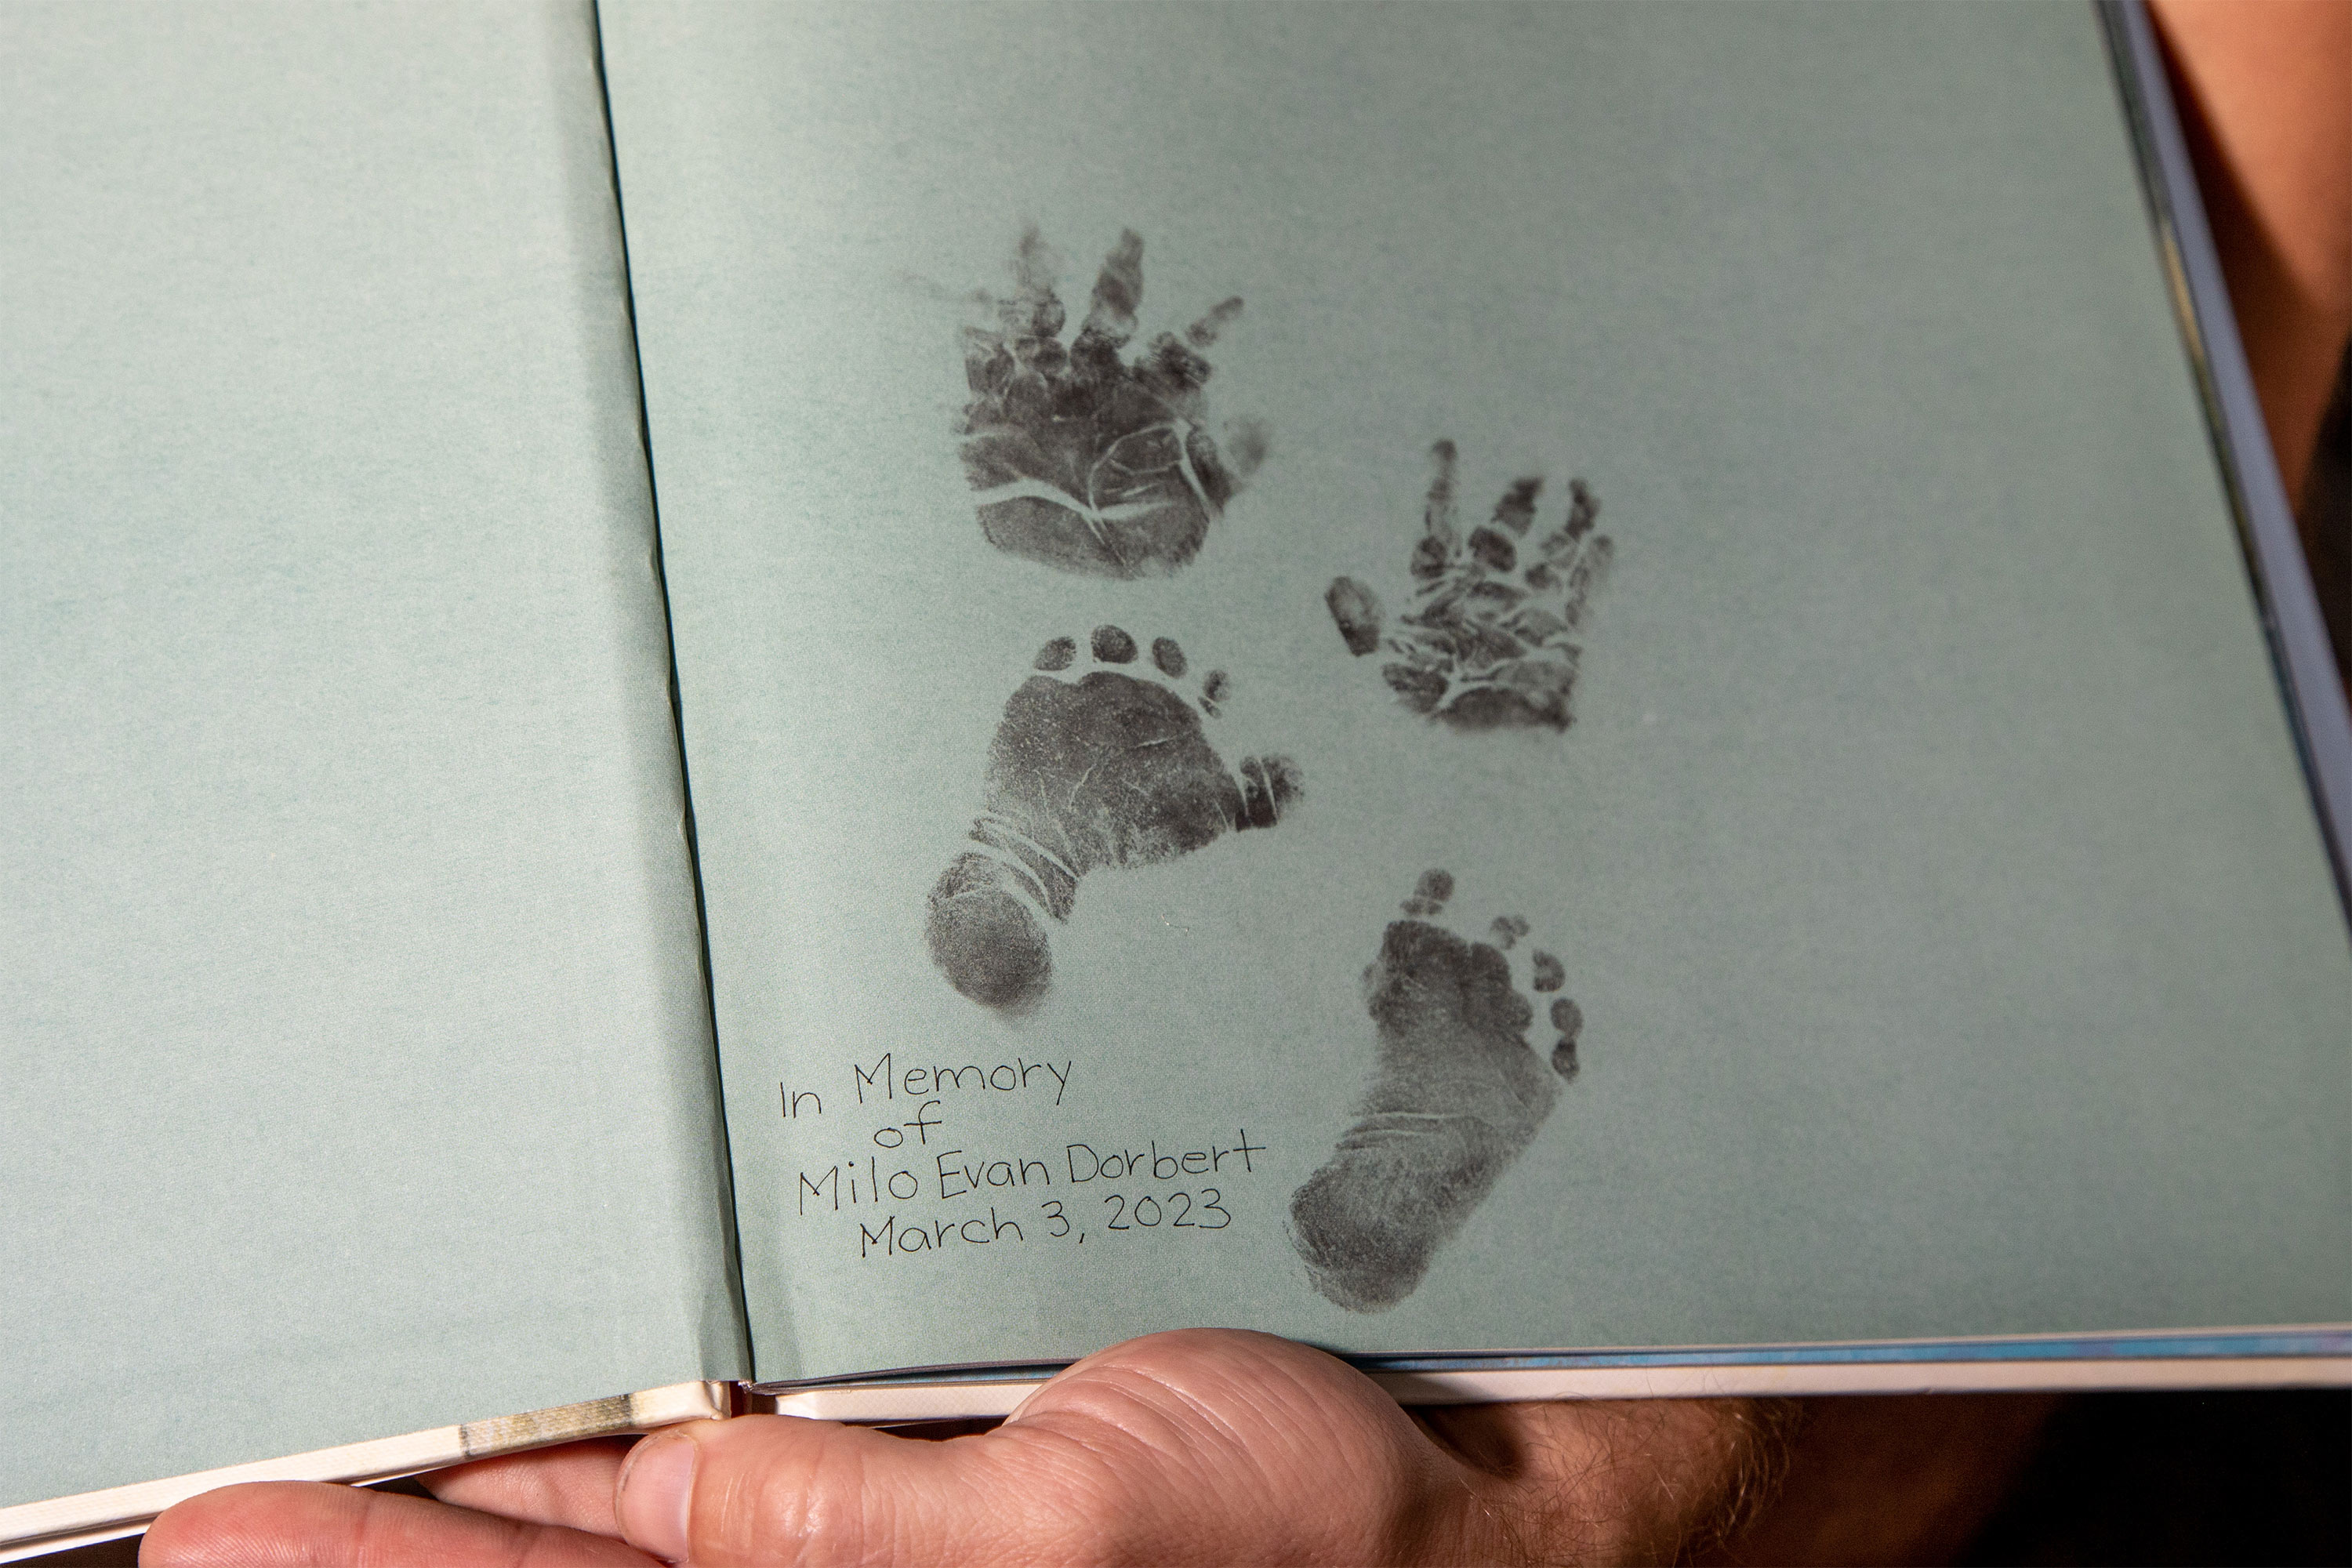 عکس صفحه در چکمه با دست و رد پای نوزاد.  متن نزدیک به چاپ می خواند، "به یاد میلو ایوان دوربرت، 3 مارس 2023."